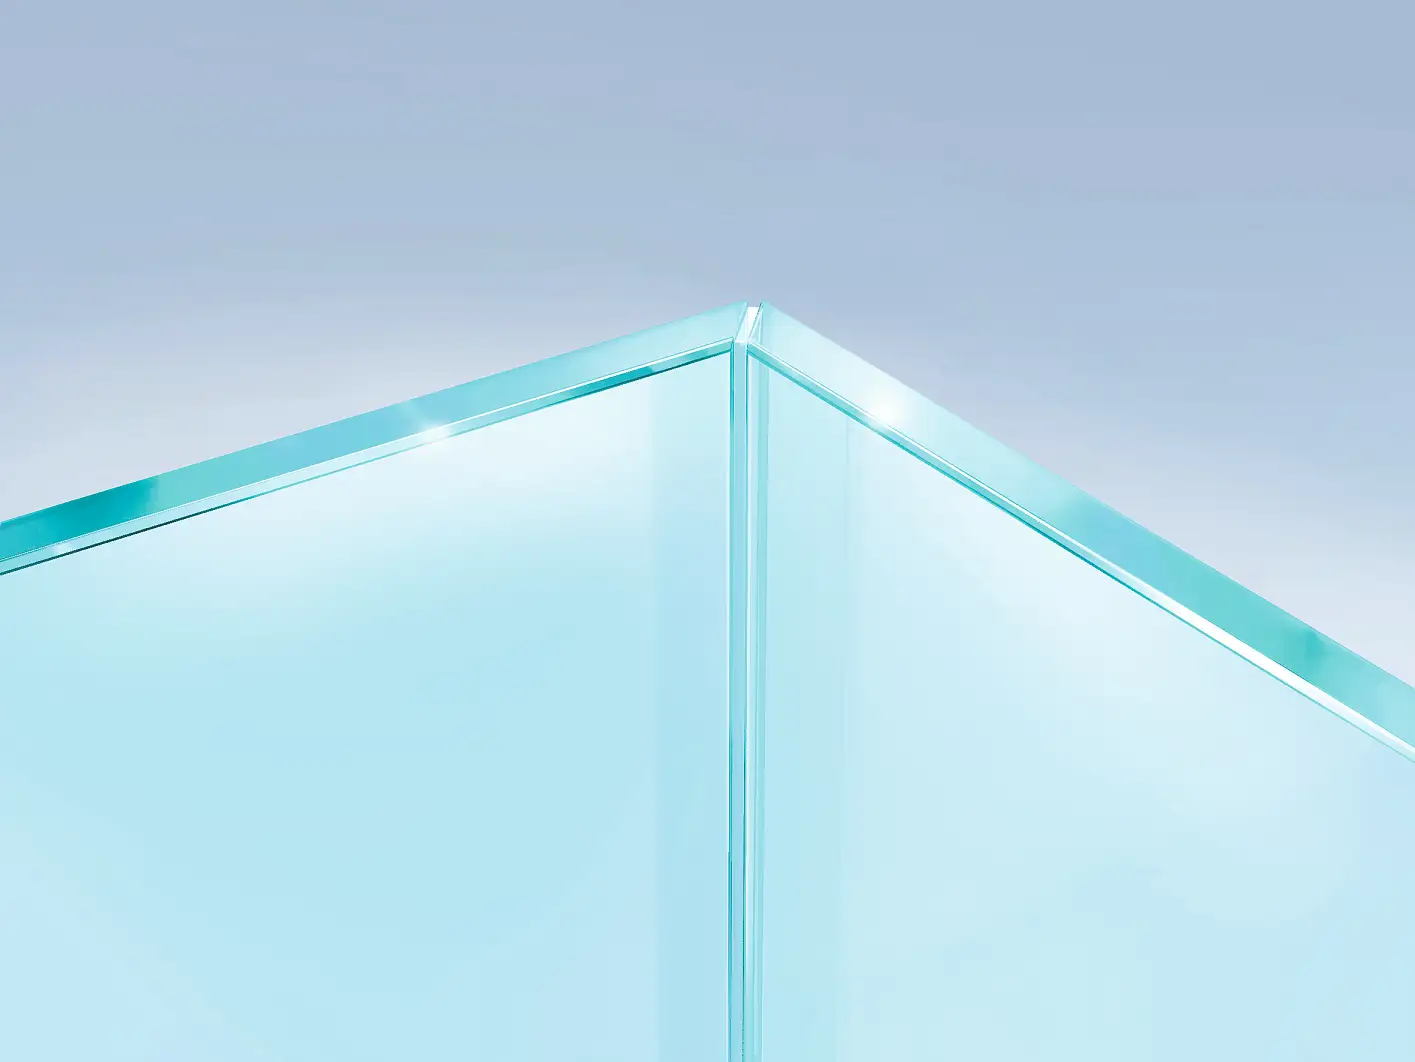 Spájanie sklenených panelov so 45° uhlom s cieľom vytvorenia neviditeľného a opticky čistého rohu